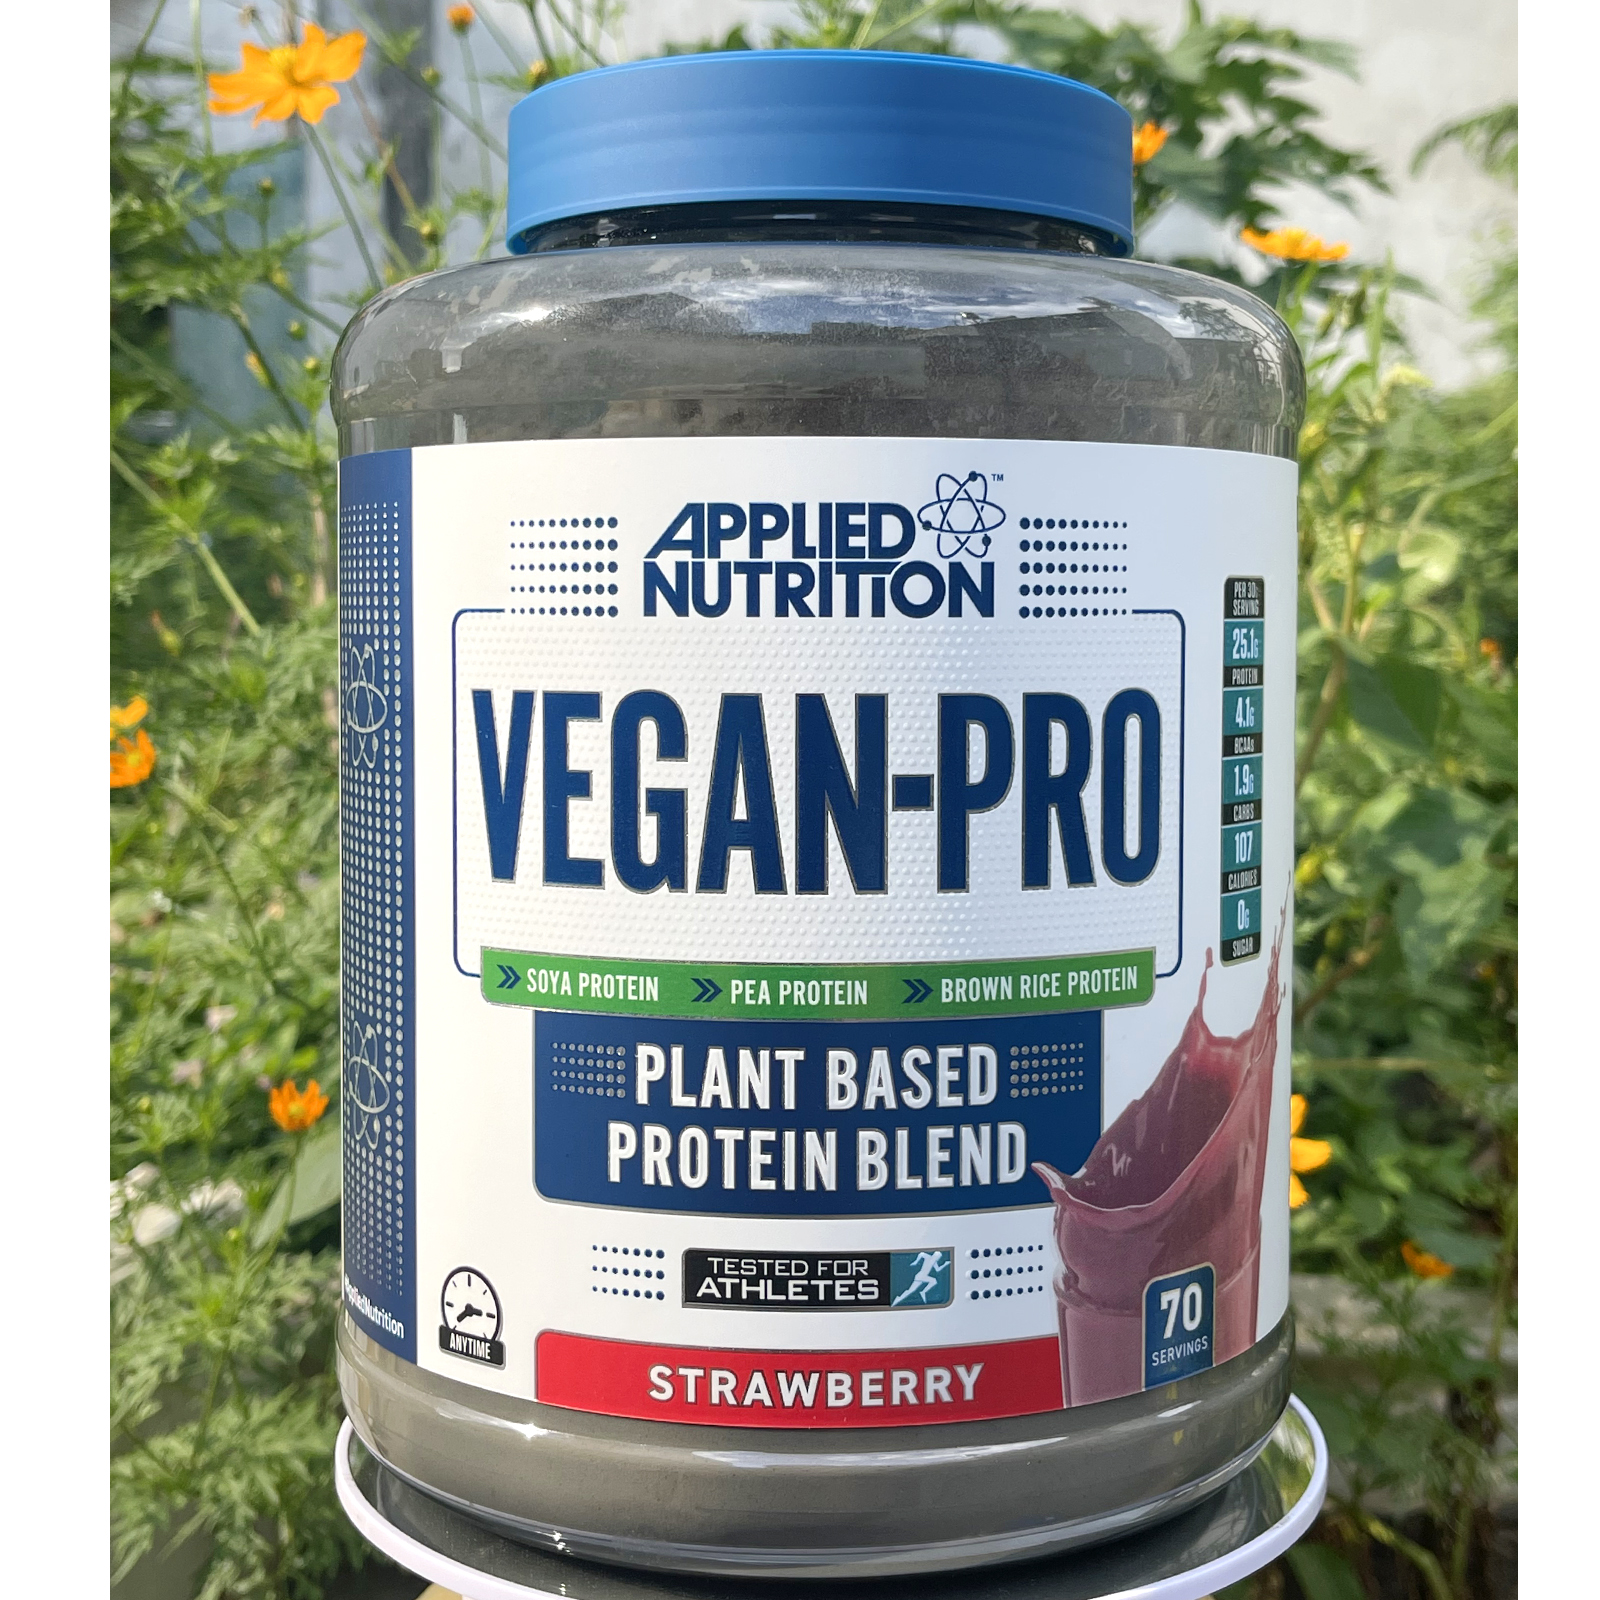 Sữa tăng cơ VEGAN PRO hộp 70 lần dùng của APPLIED NUTRITION với 100% protein từ thực vật - hỗ trợ tăng cơ giảm mỡ cao cấp